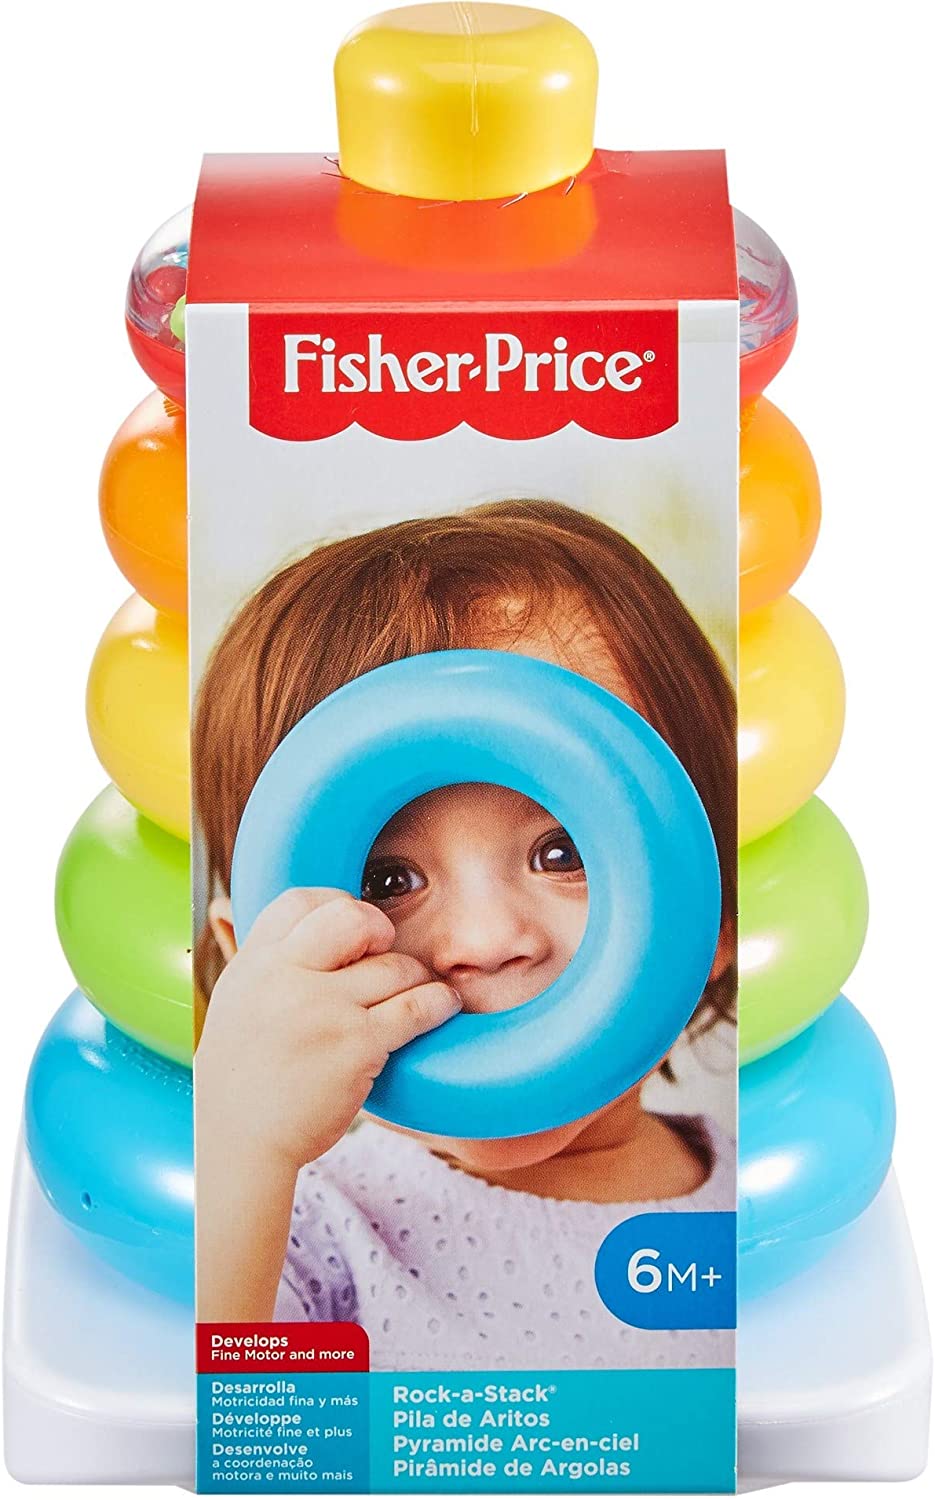 Aros Fisher Price juguete apilable para bebés